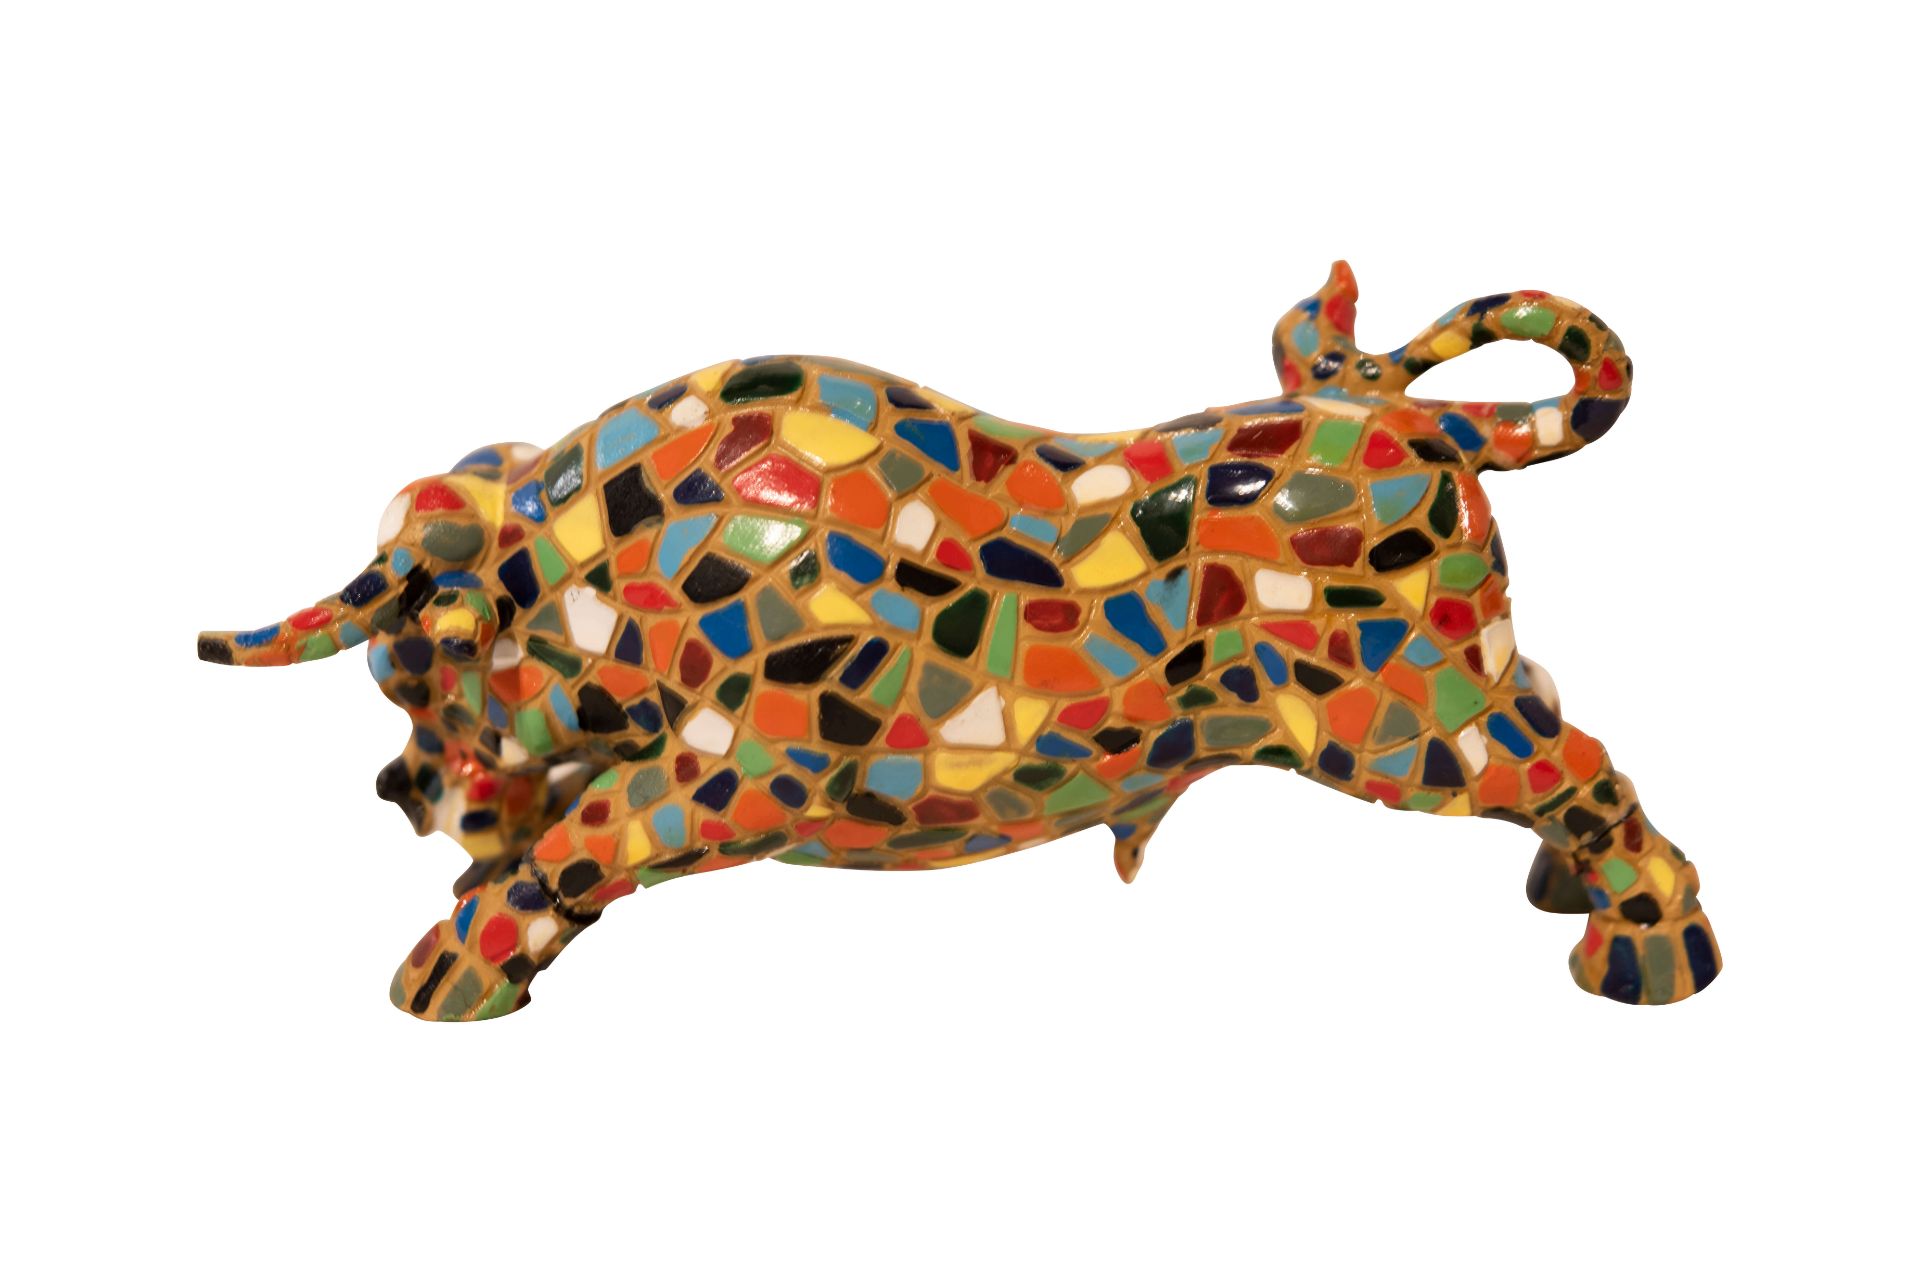 Bunter Keramik Stier, Symbol von Spanien | Colorful Ceramic Bull, Symbol of Spain